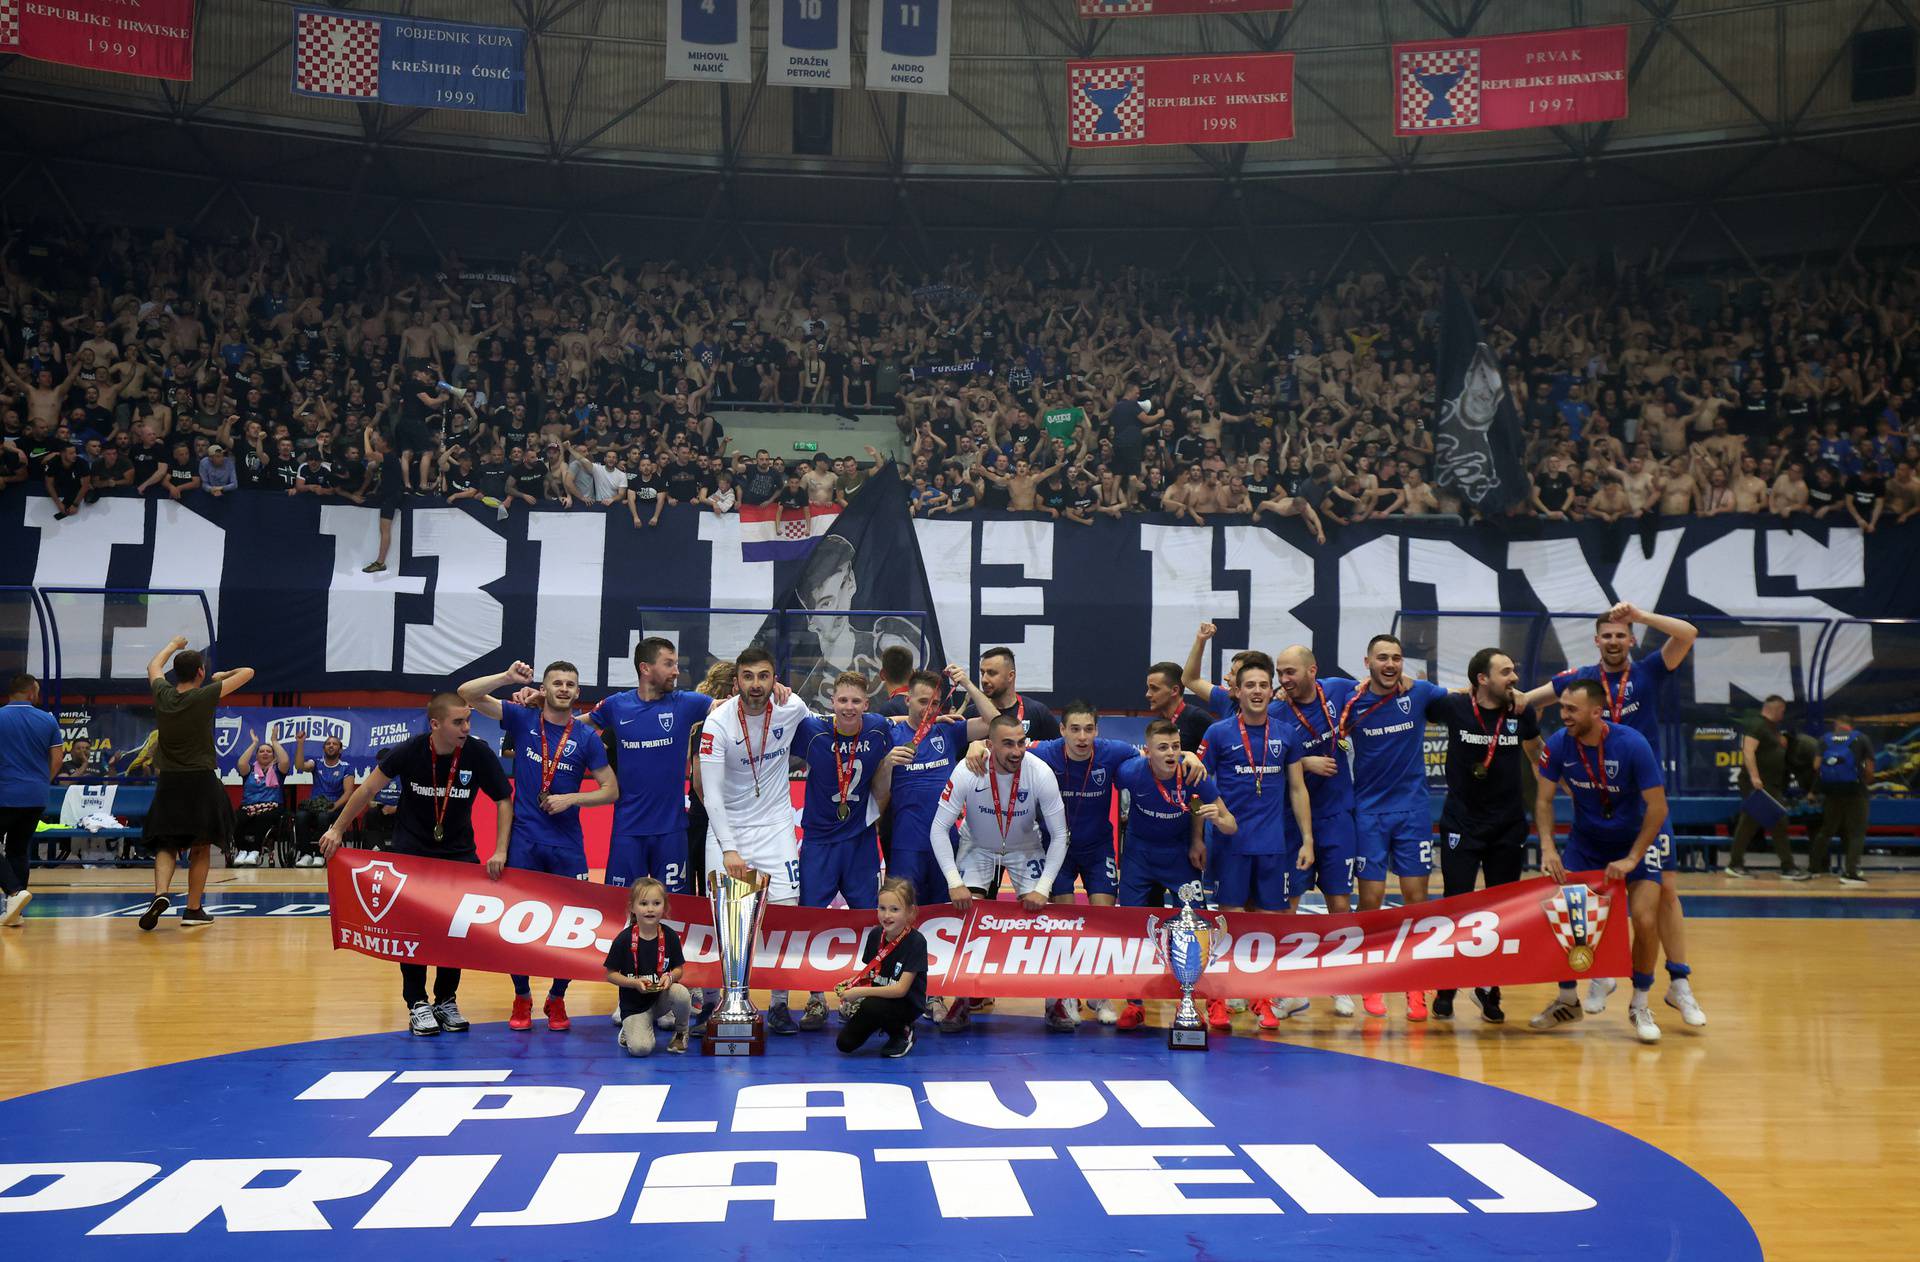 Futsal Dinamo je u Draženovu domu pobijedio Olmissum i osvojio prvi naslov prvaka Hrvatske